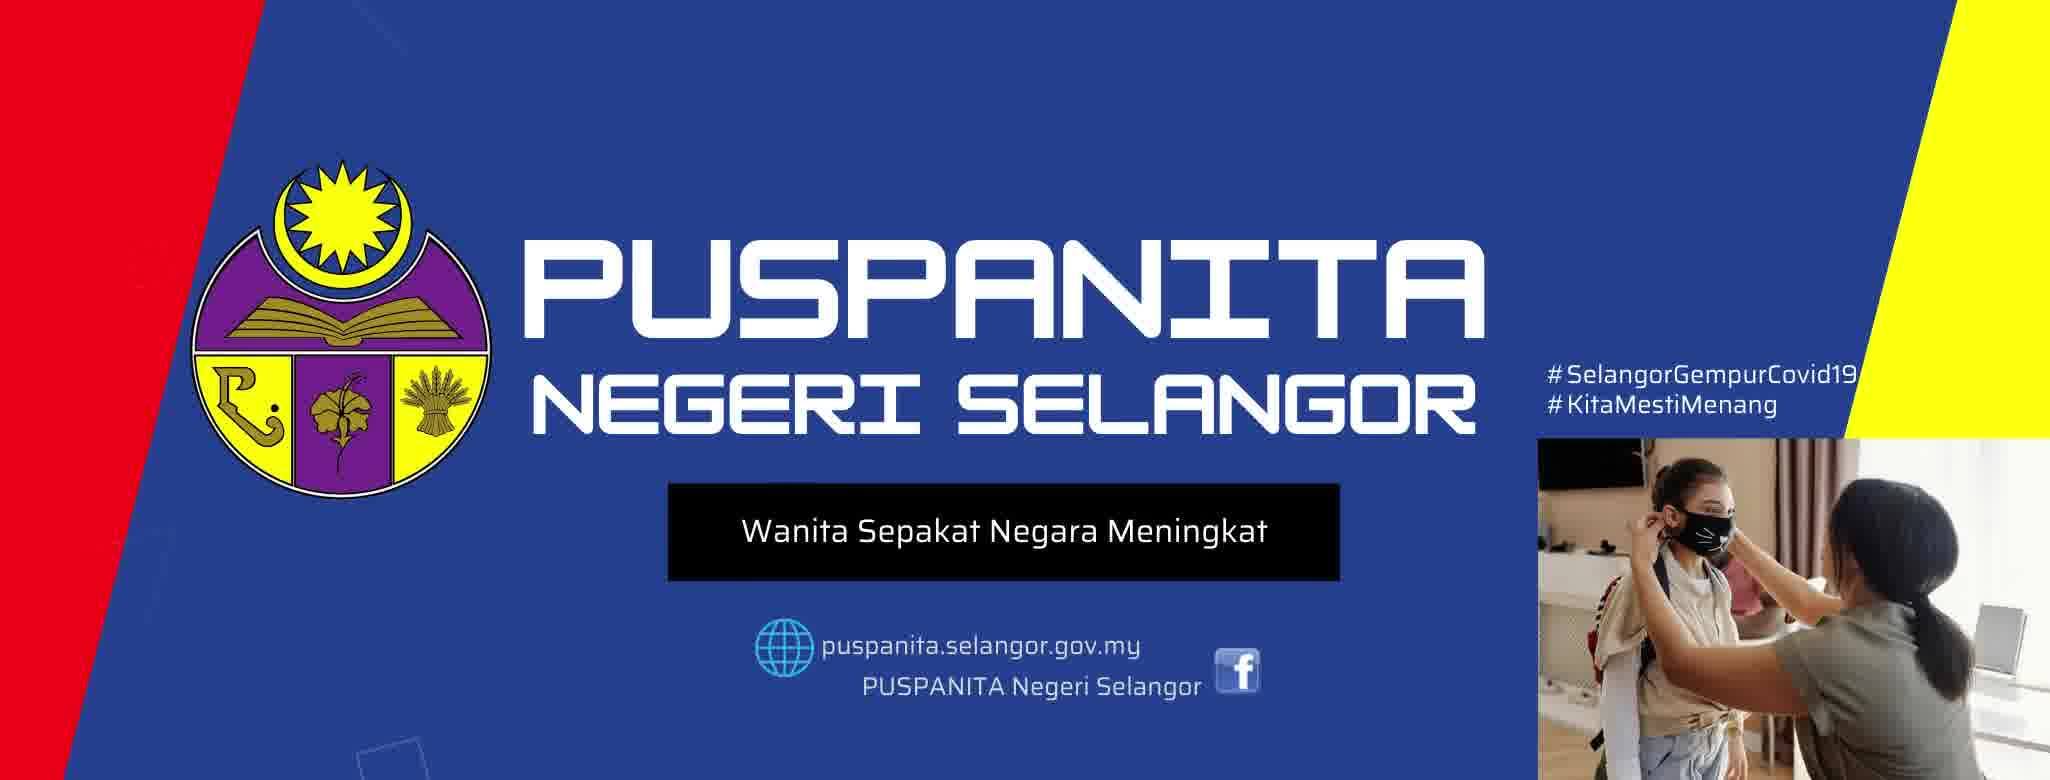 PUSPANITA Negeri Selangor